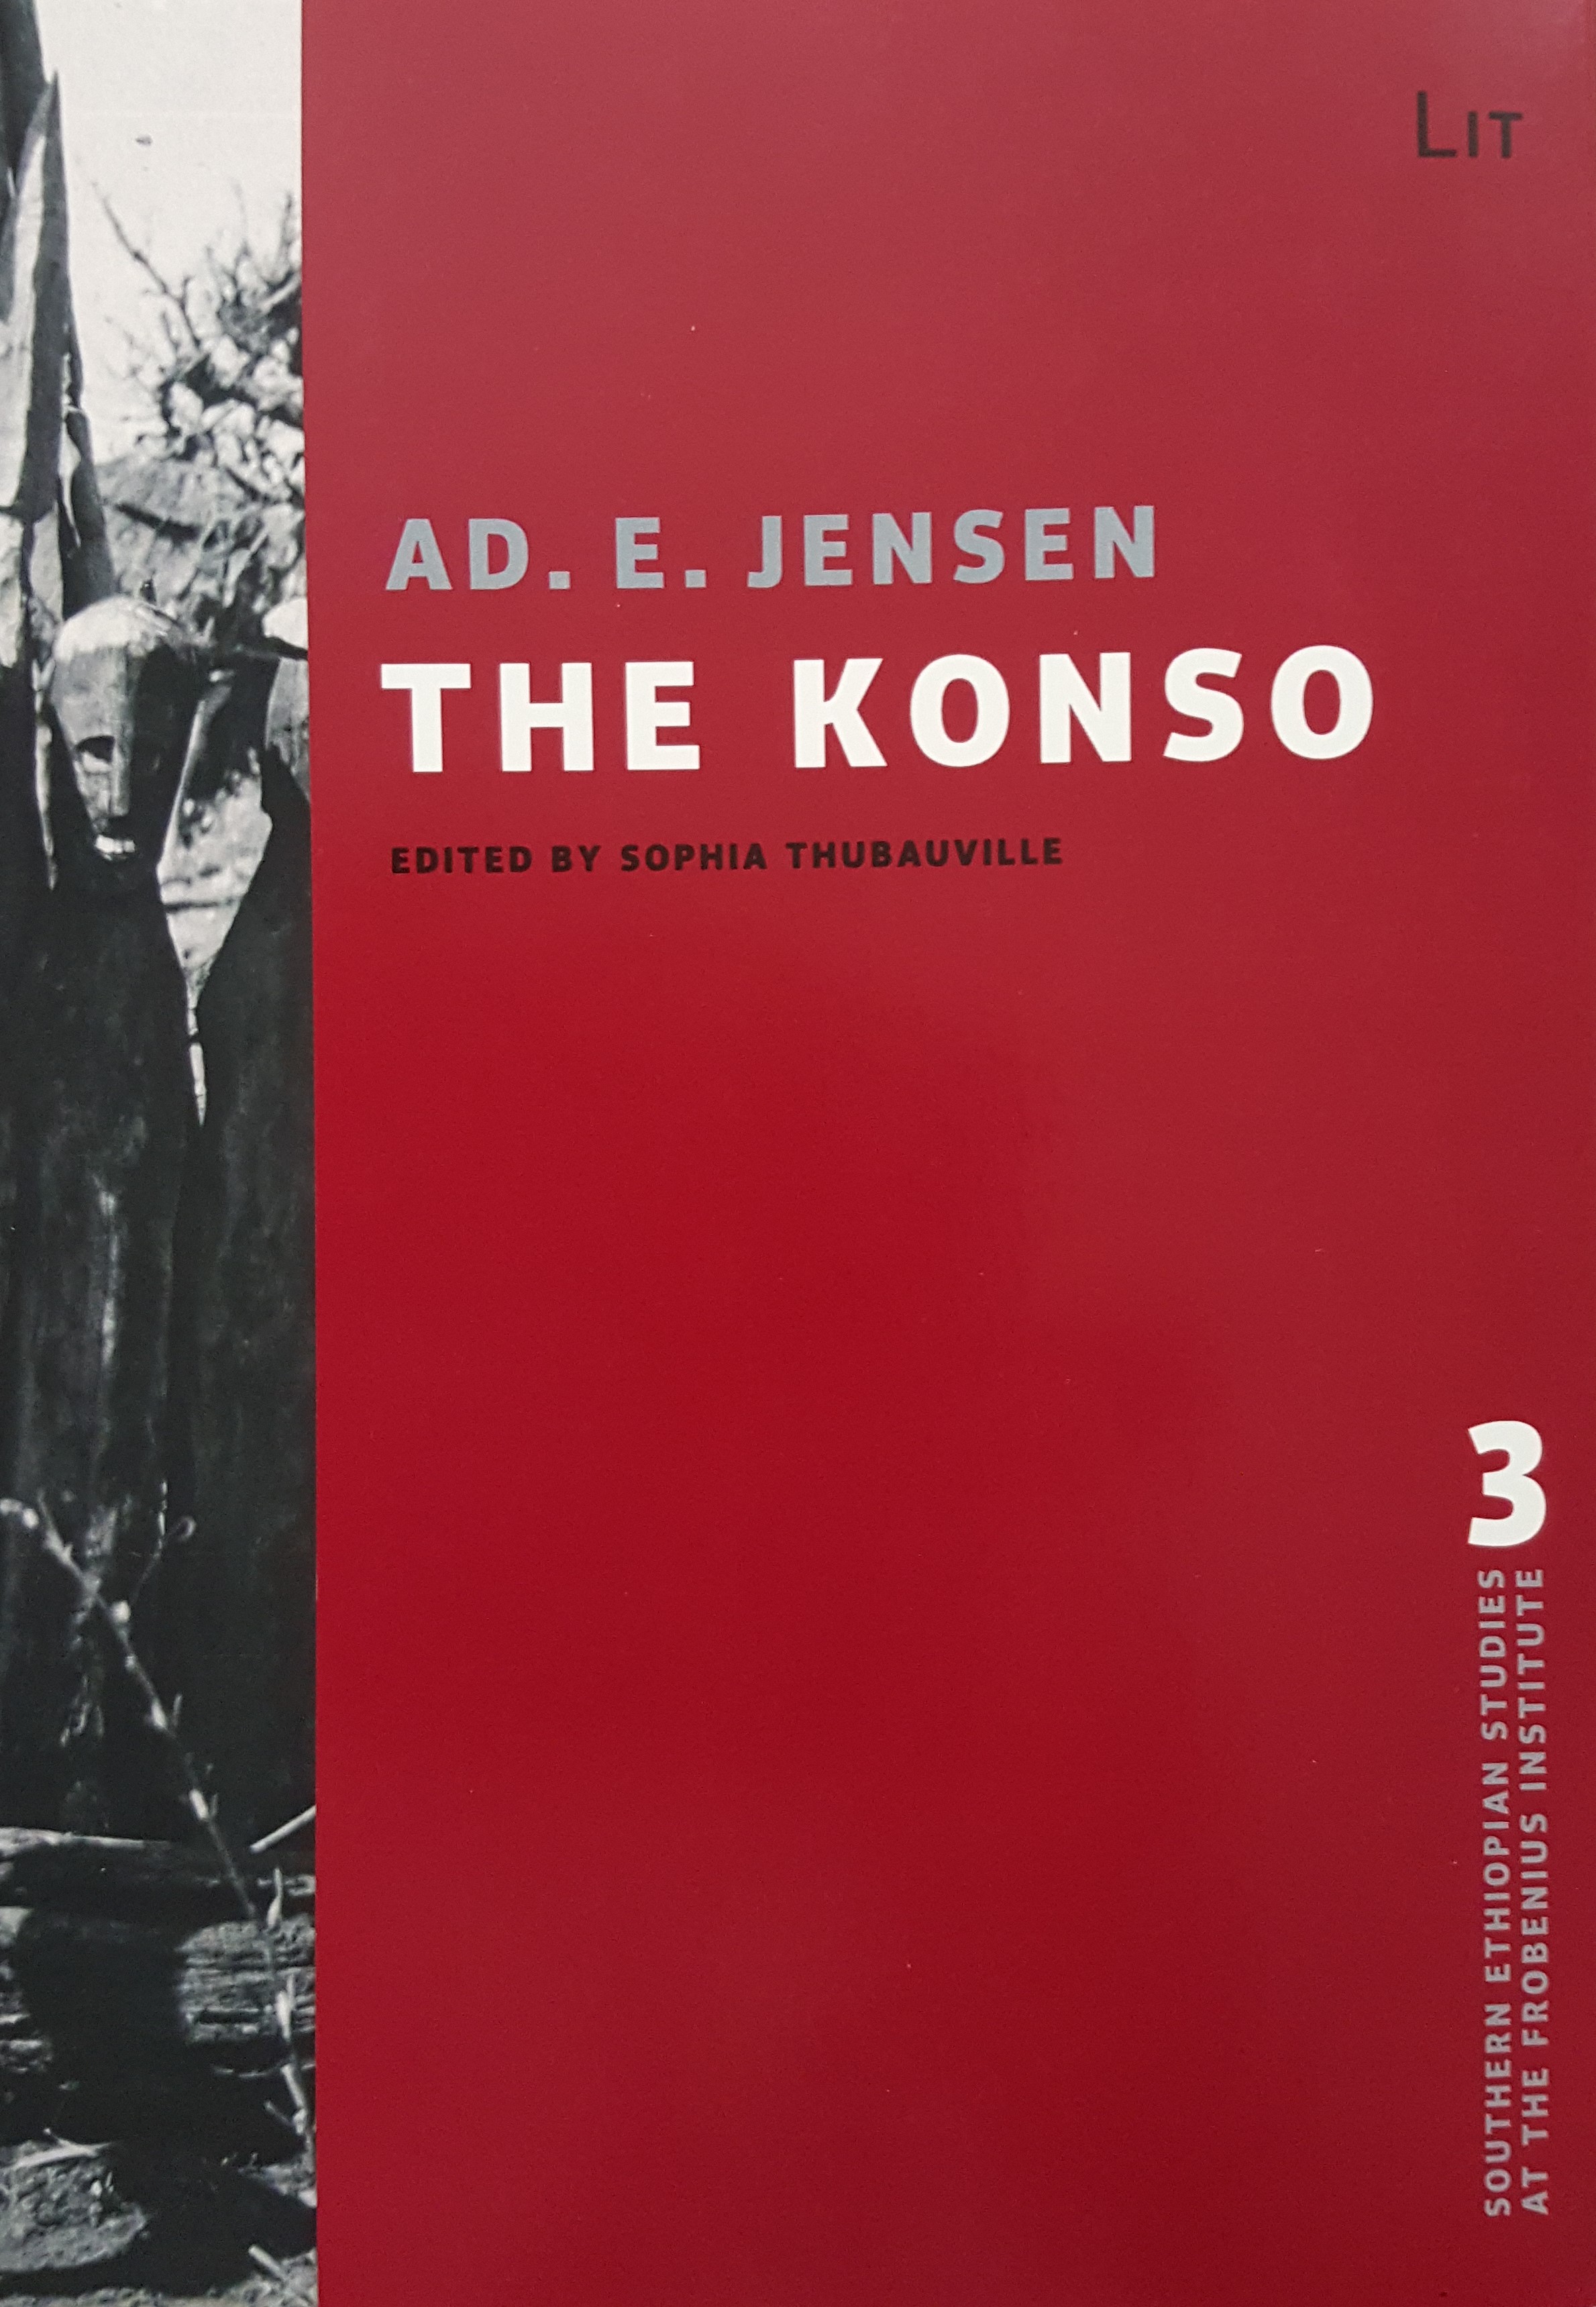 The Konso